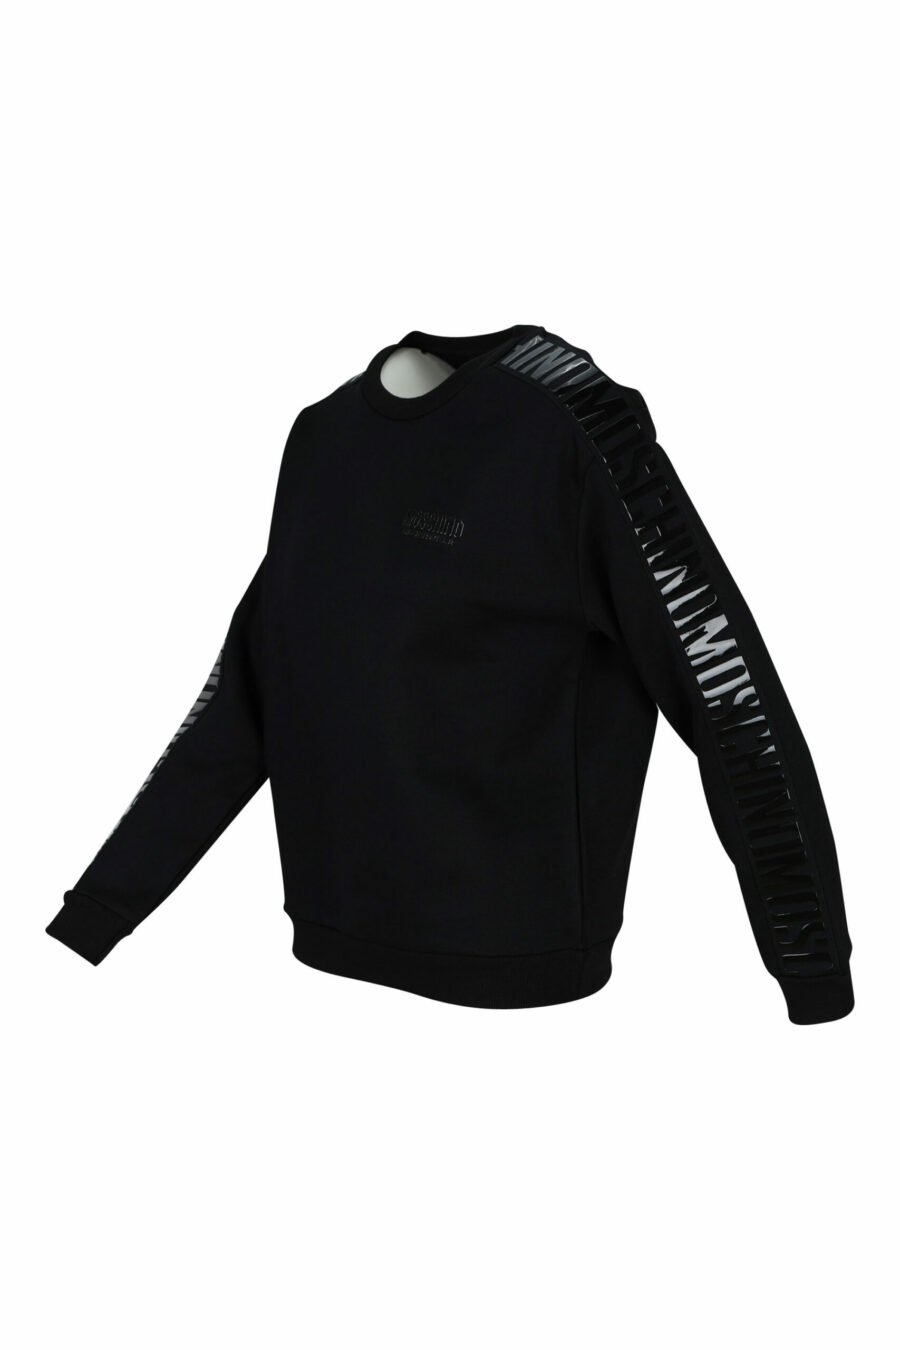 Schwarzes Sweatshirt mit monochromem Bandlogo an den Seiten - 889316614961 1 skaliert